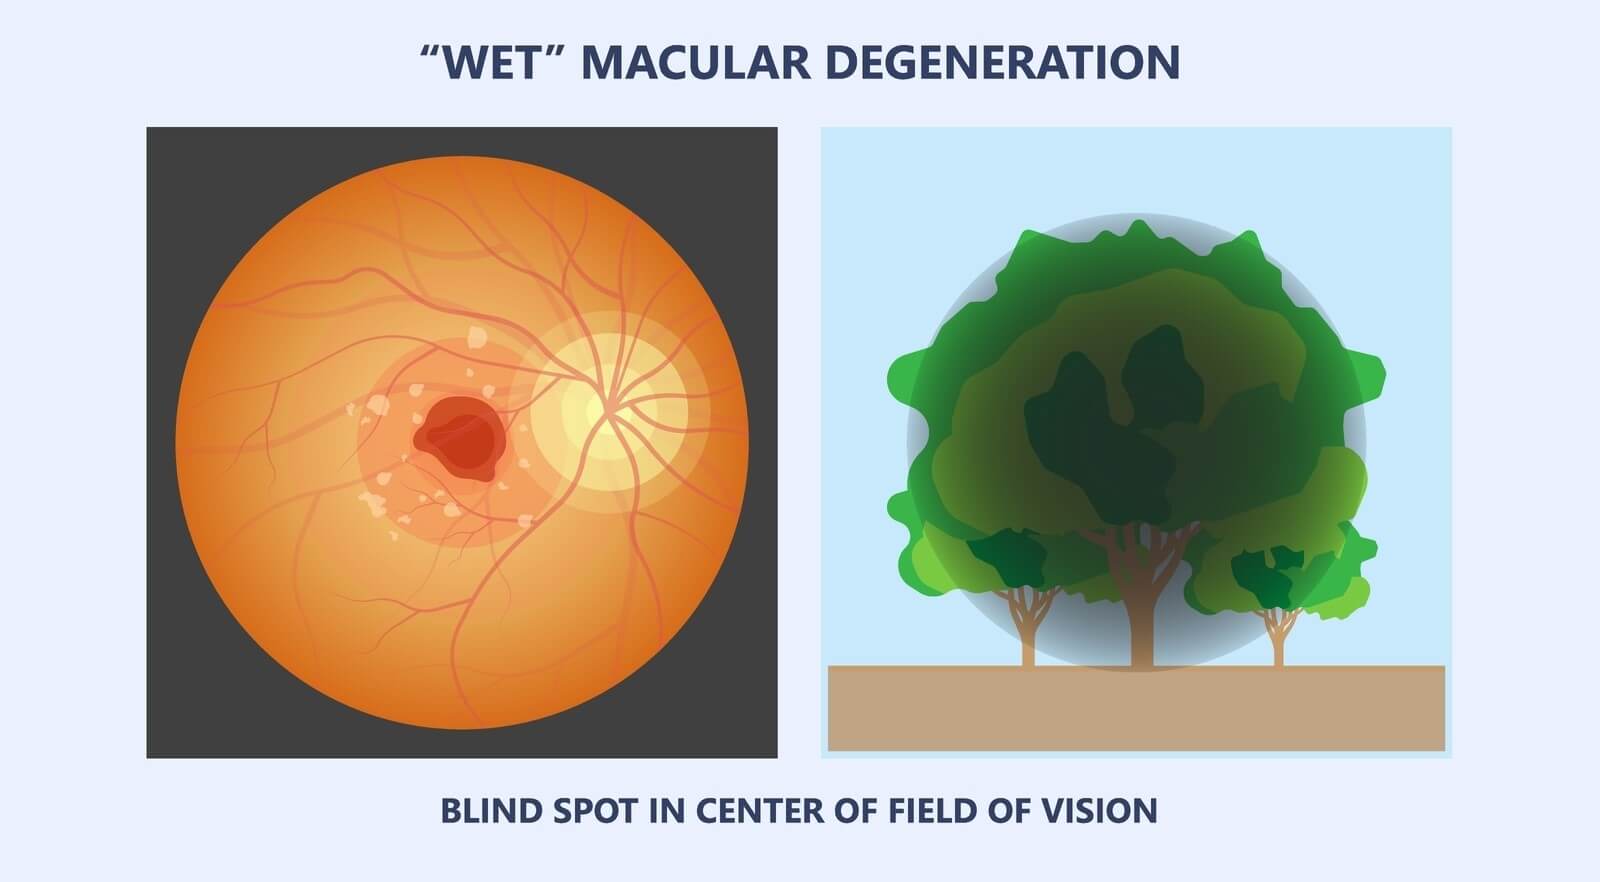 Wet AMD vision